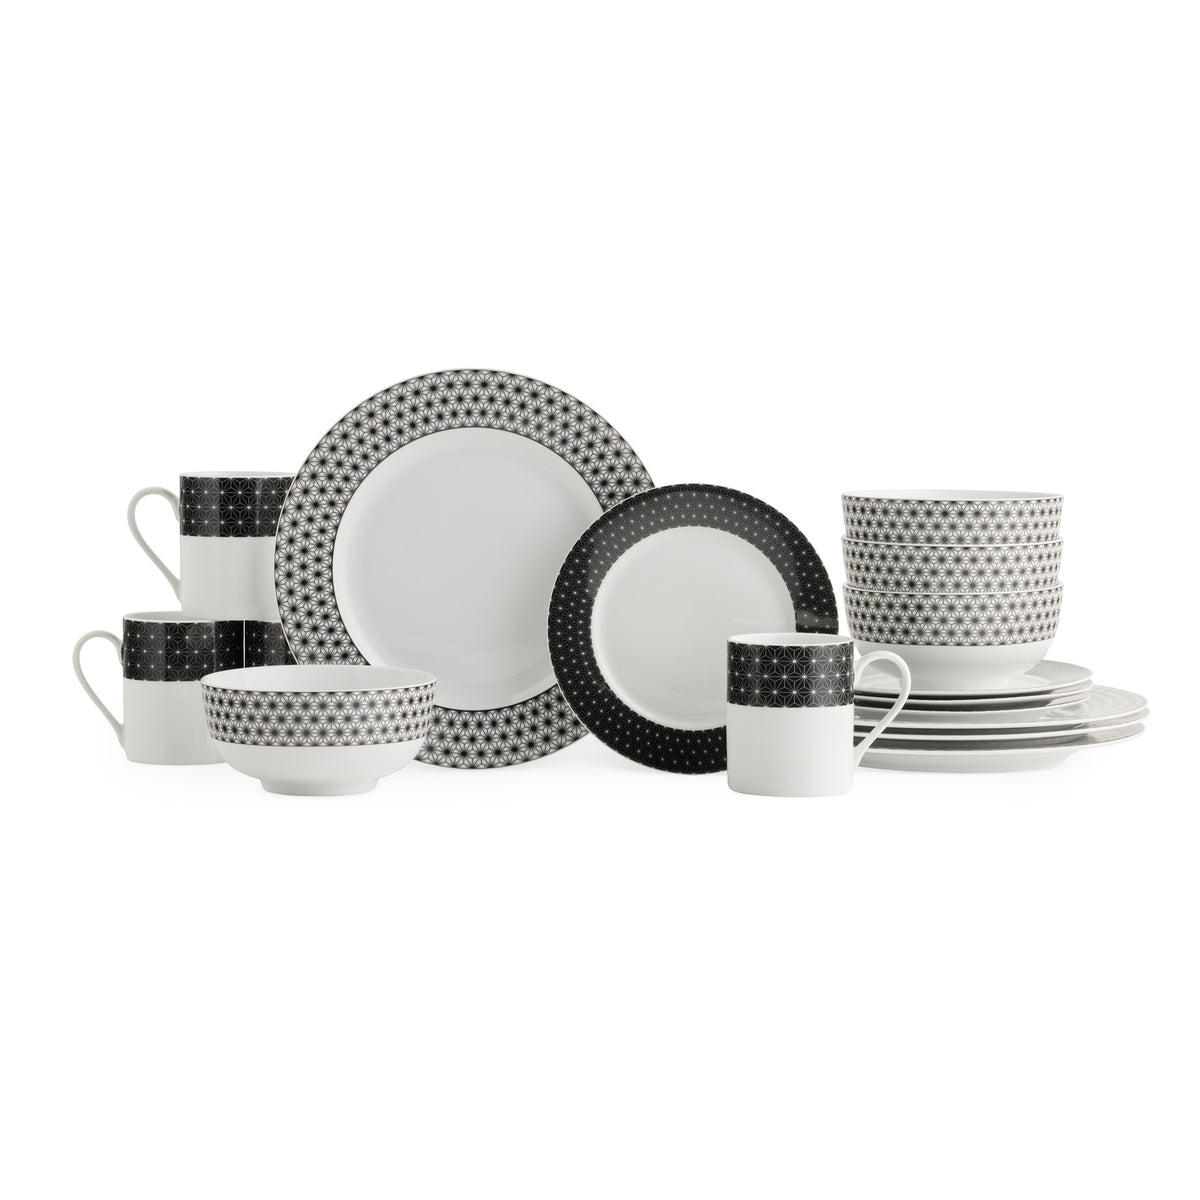 Spode Home Retrospect 16-piece Porcelain Dinnerware Set